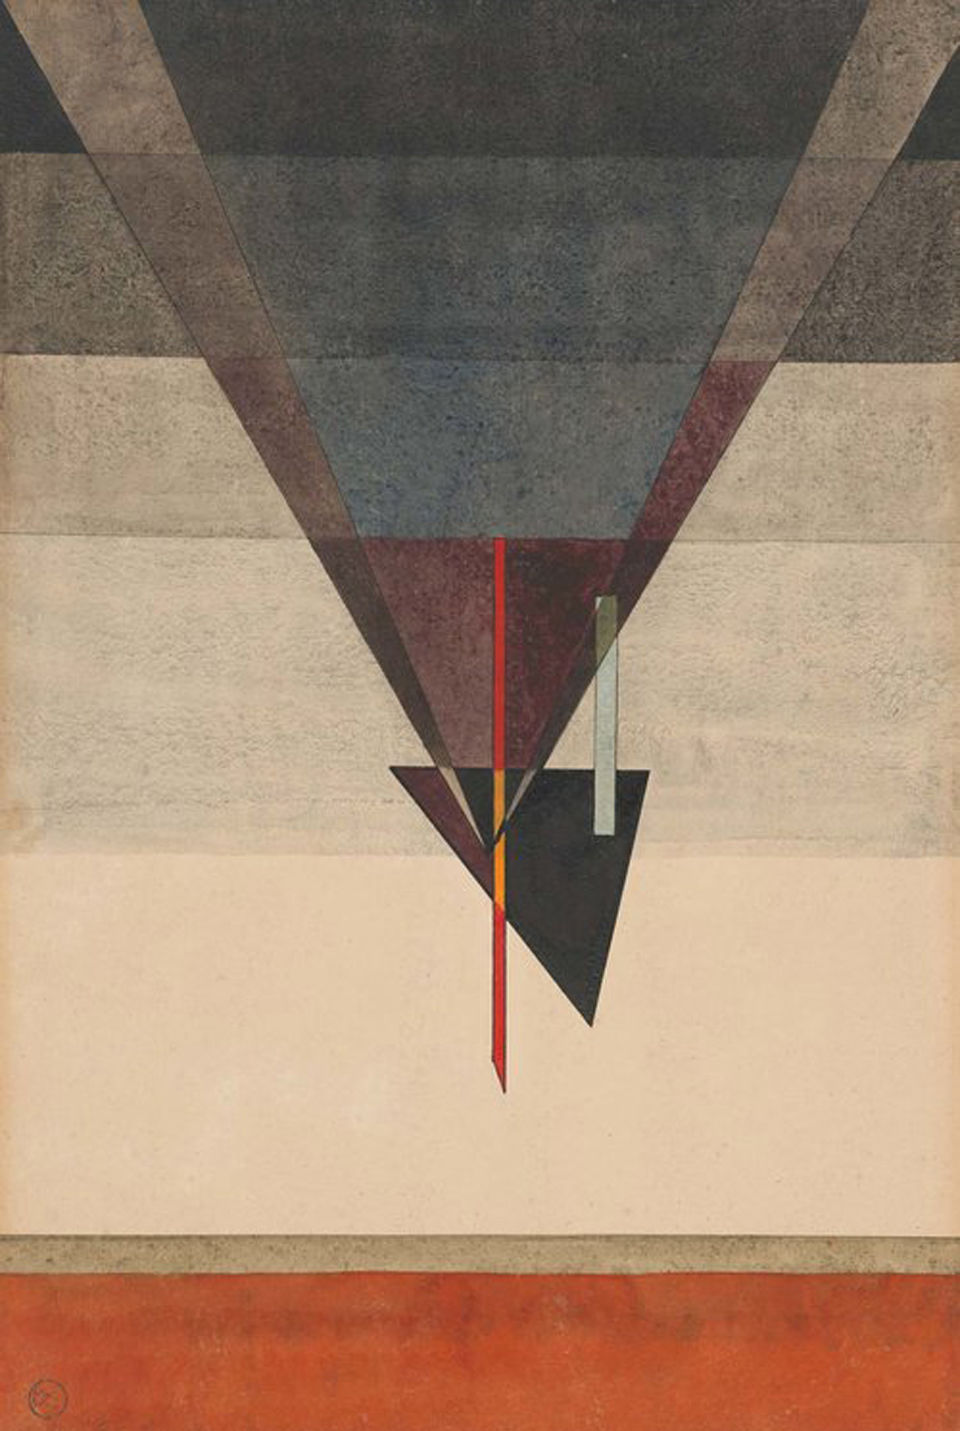 Wassily Kandinsky: Descent, 1925, watercolour and Indian ink on paper, 48.4 x 32.2 cm | Kulturstiftung Sachsen-Anhalt – Moritzburg Art Museum | Photograph: Kulturstiftung Sachsen-Anhalt